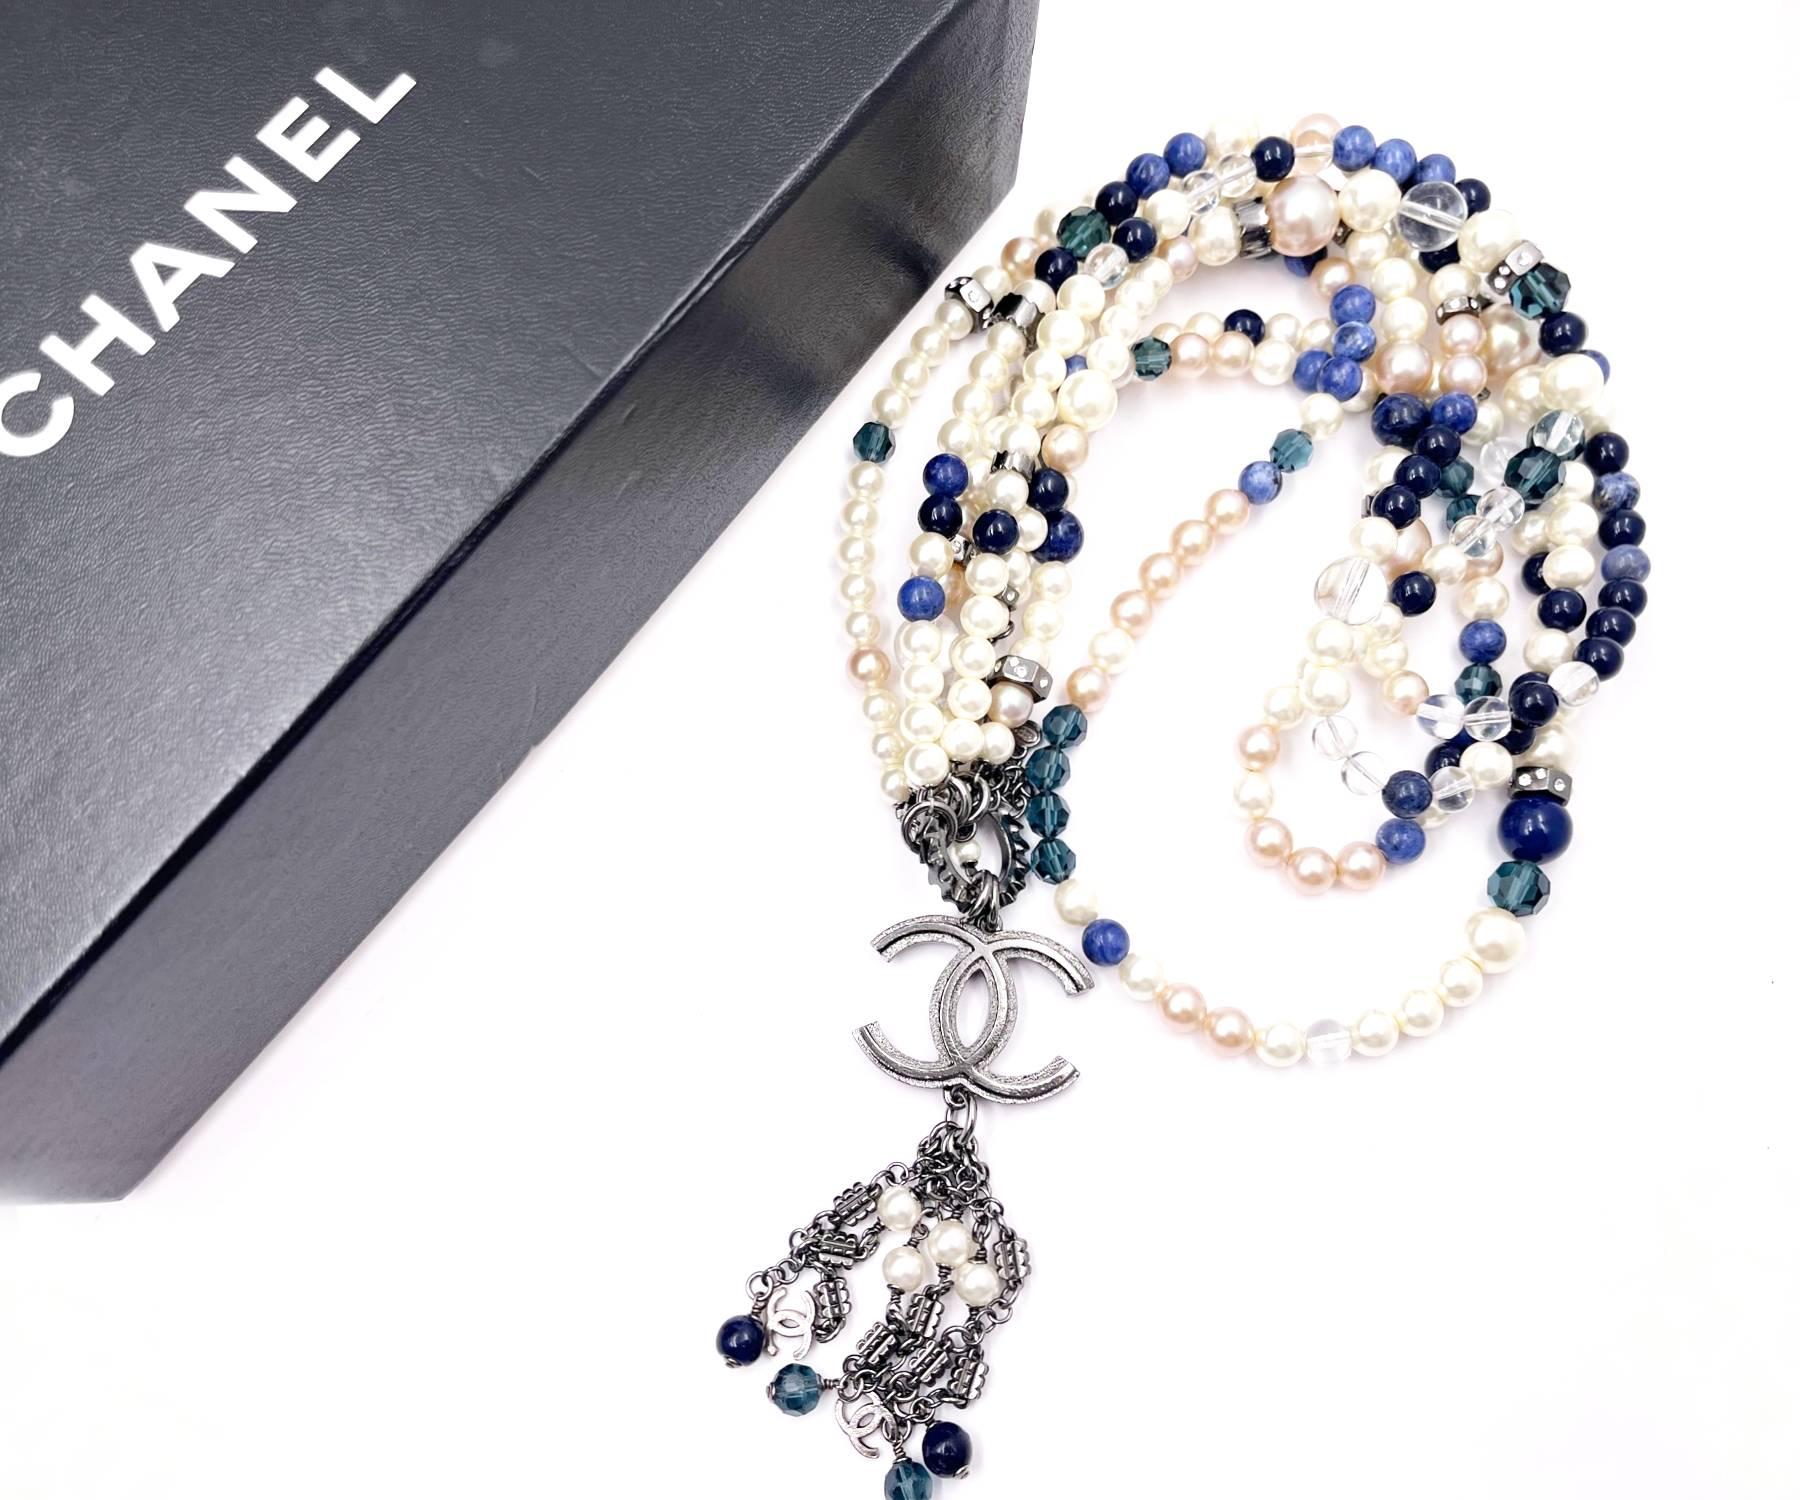 Chanel Super Rare Blue Stone Pearl Gunmetal CC Tassel Large Pendant Super Long Necklace

*Marqué 04
*Fabriqué en France
*Livré avec la boîte d'origine

-Le pendentif mesure environ 1,5″ x 5″ .
-La chaîne est d'une longueur totale d'environ